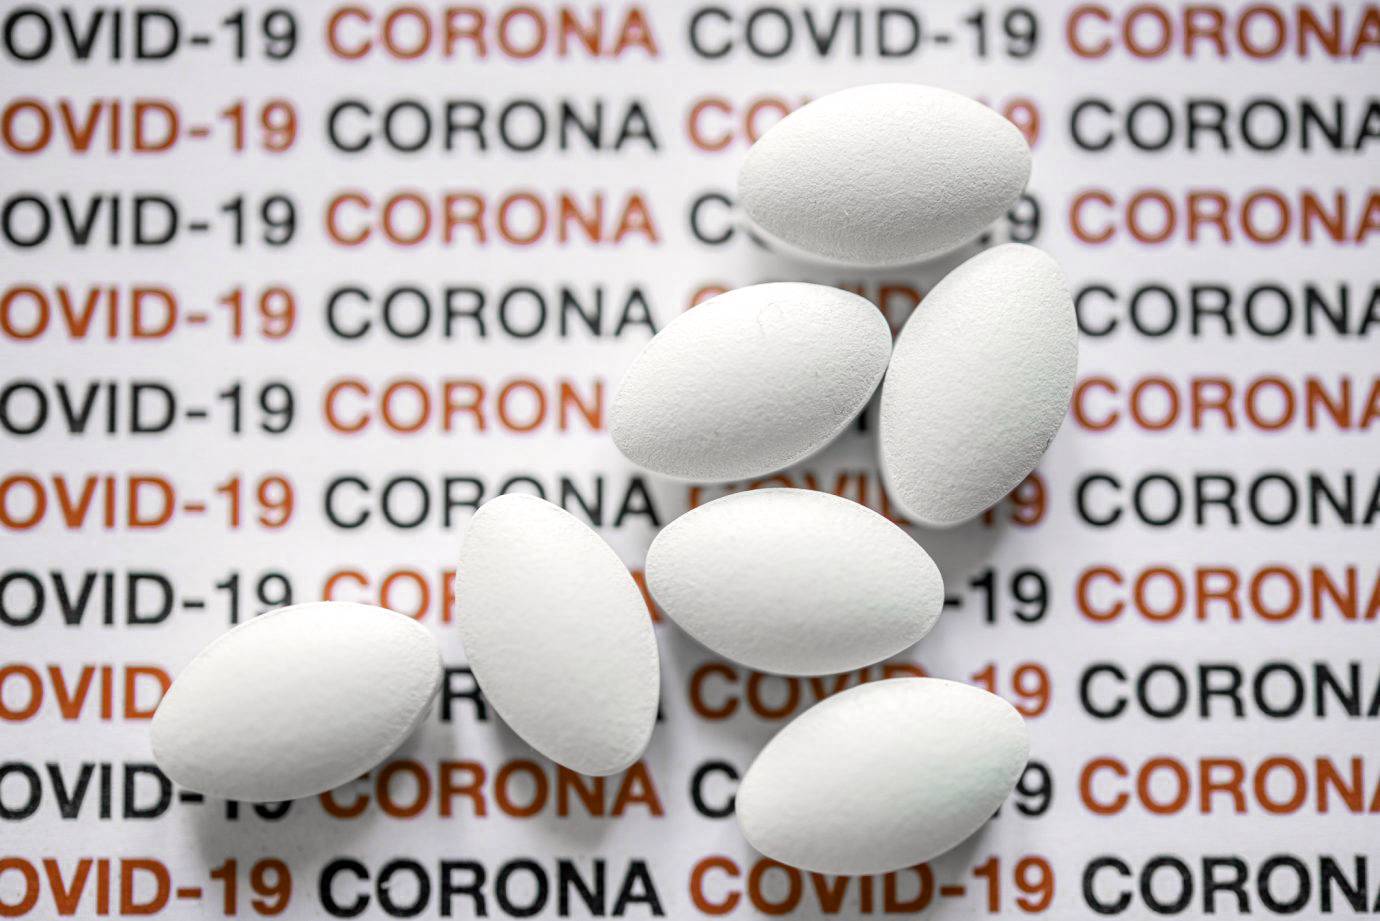 Percepções da nanomedicina sobre a eficácia da cloroquina contra a COVID-19